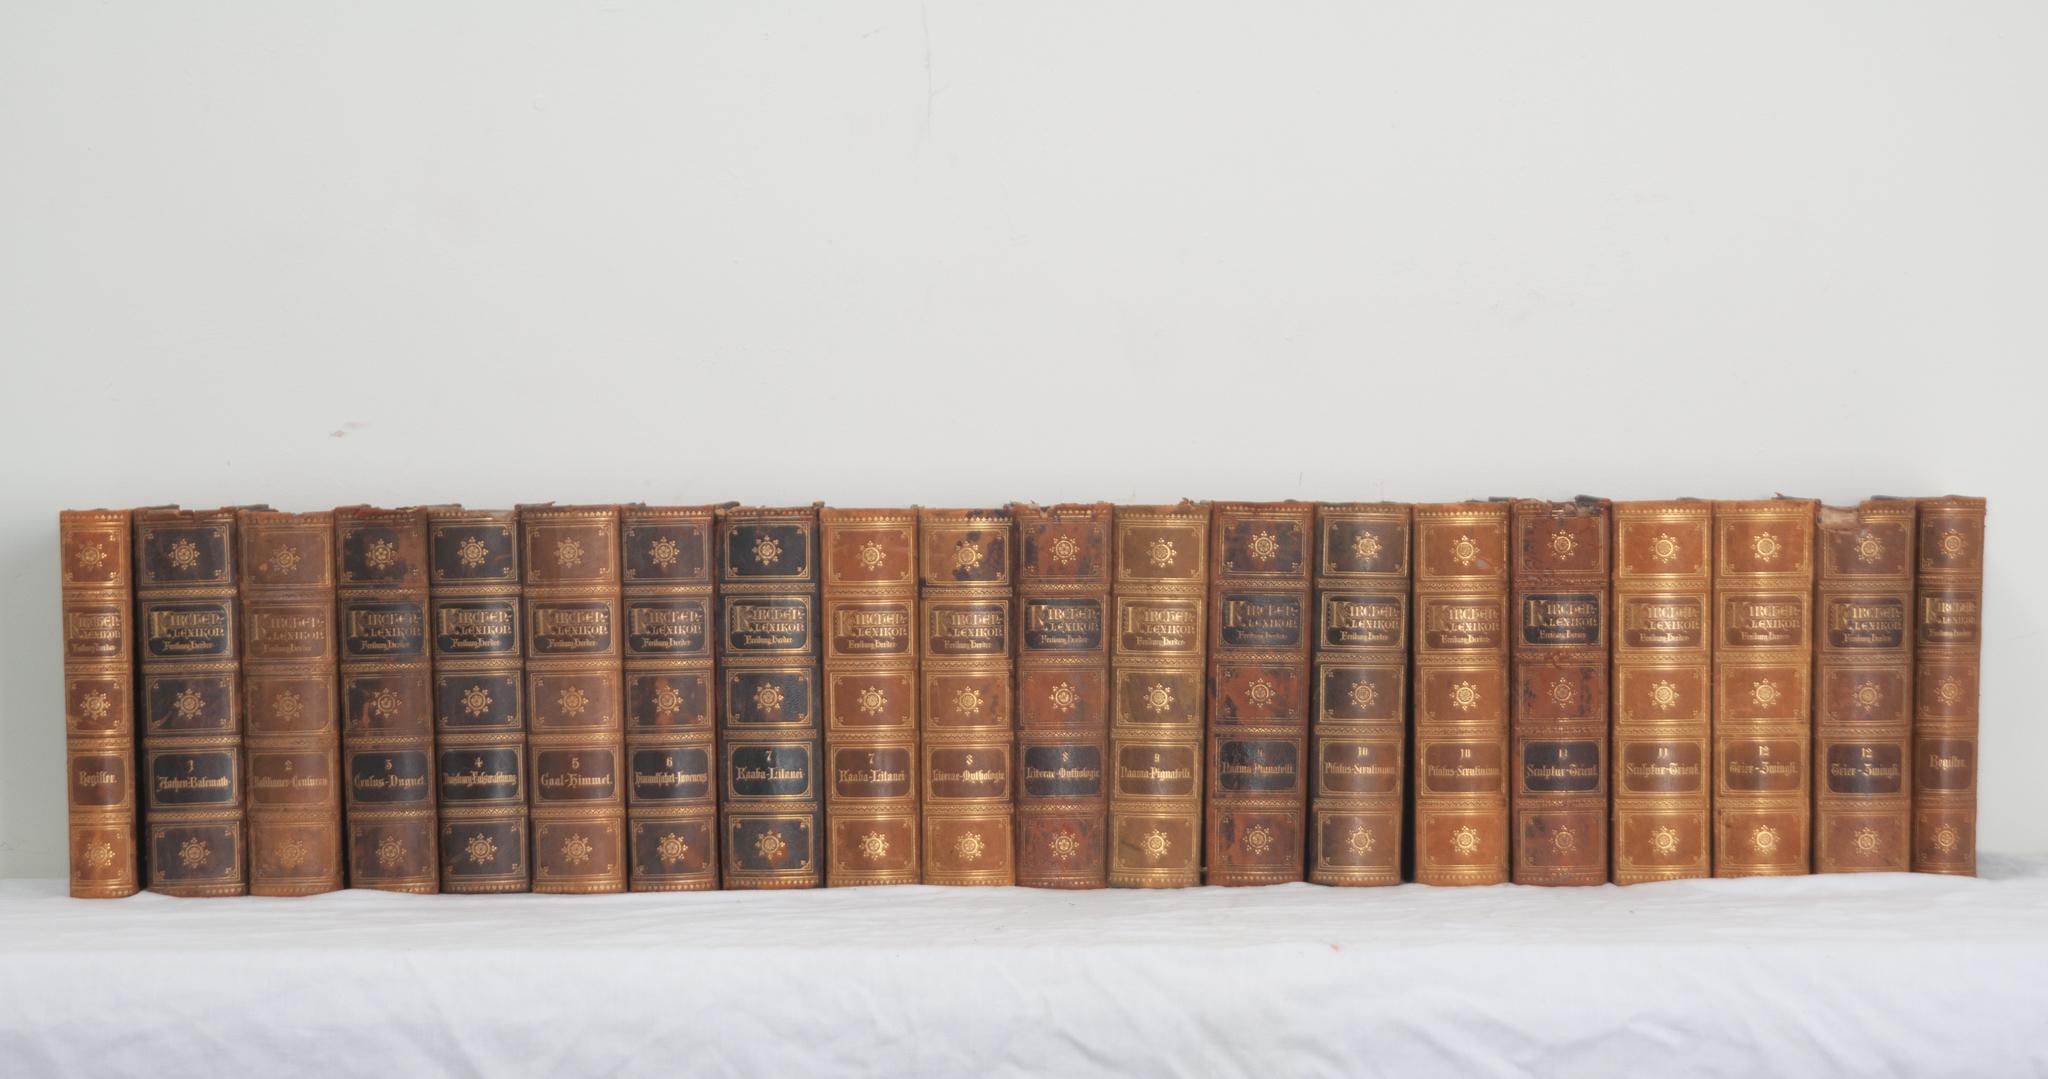 Collectional de vingt volumes d'une encyclopédie catholique par les auteurs allemands Joseph Cardinal Hergenröther et Dr. Franz Kaulen. Cet ensemble est relié en cuir avec une dorure estampillée du titre et du volume correspondant. Rédigé en